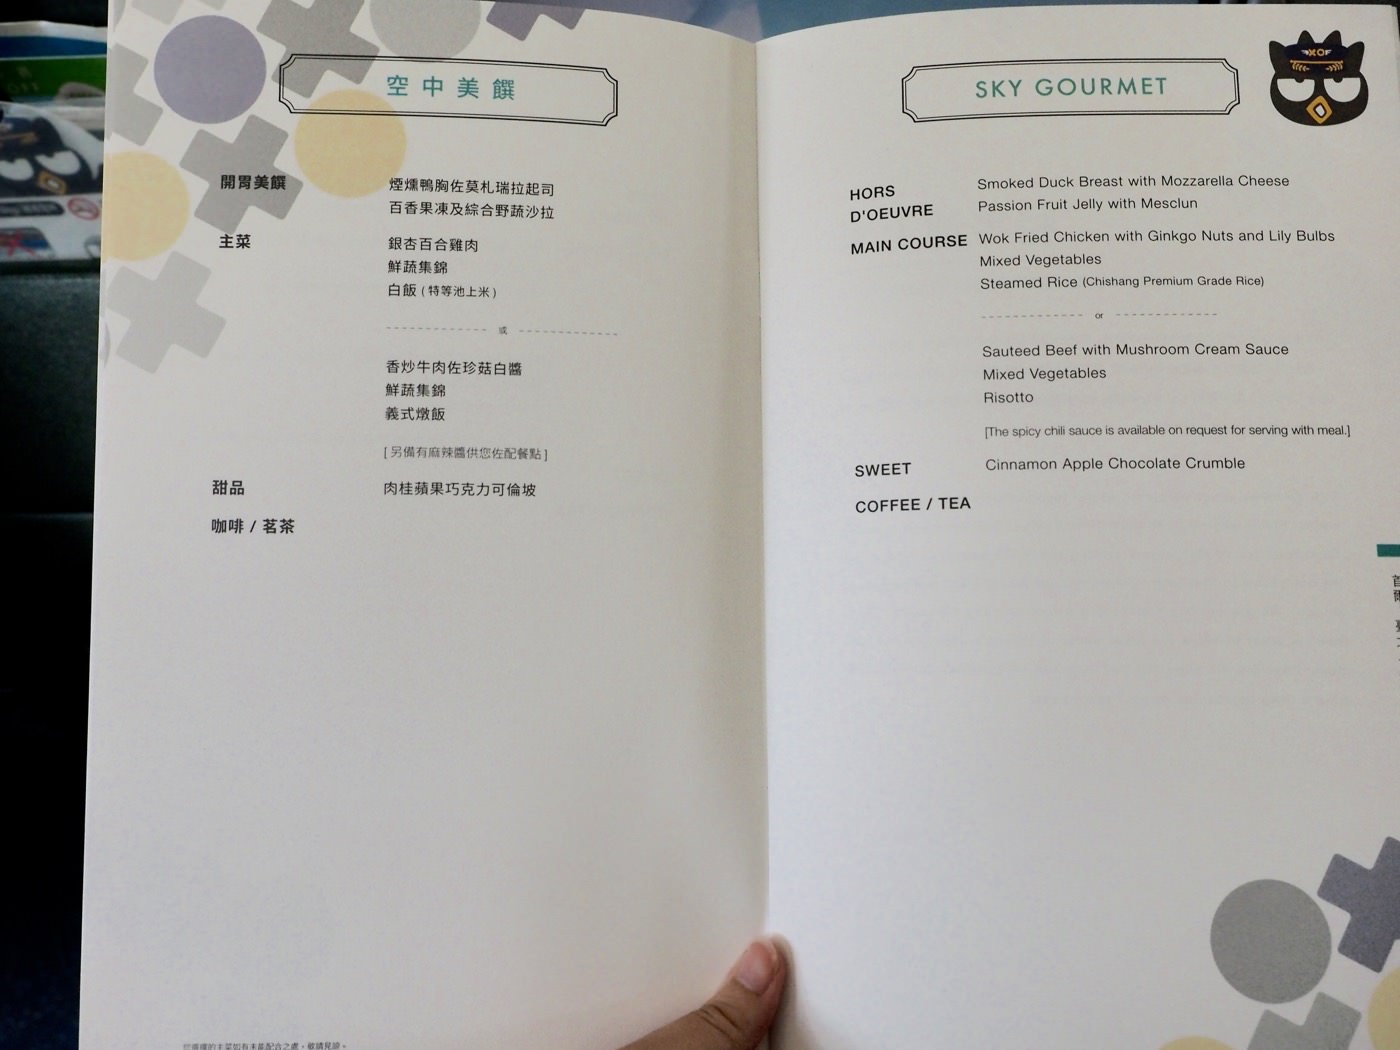 飛行紀錄 台北-首爾 長榮航空商務艙 哩程兌換商務艙 酷企鵝彩繪機 - 一口冒險 Bitesized Adventure